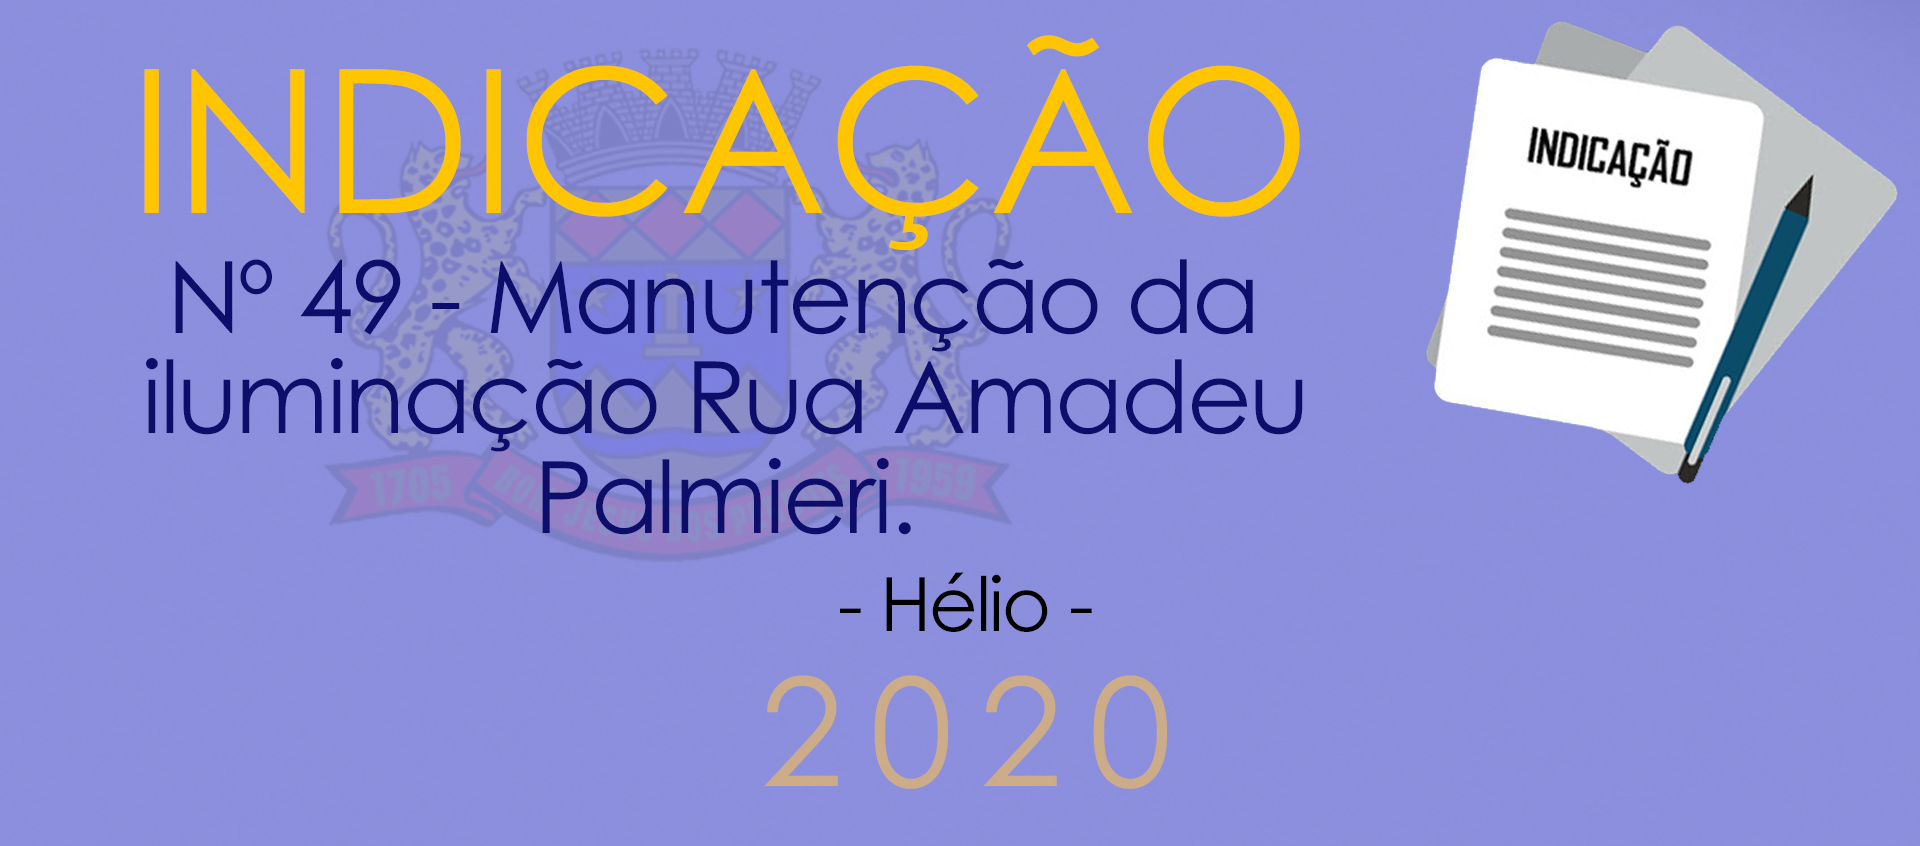 Indicação nº 49 - Manuntenção da iluminação pública da Rua Amadeu Palmieri - Hélio